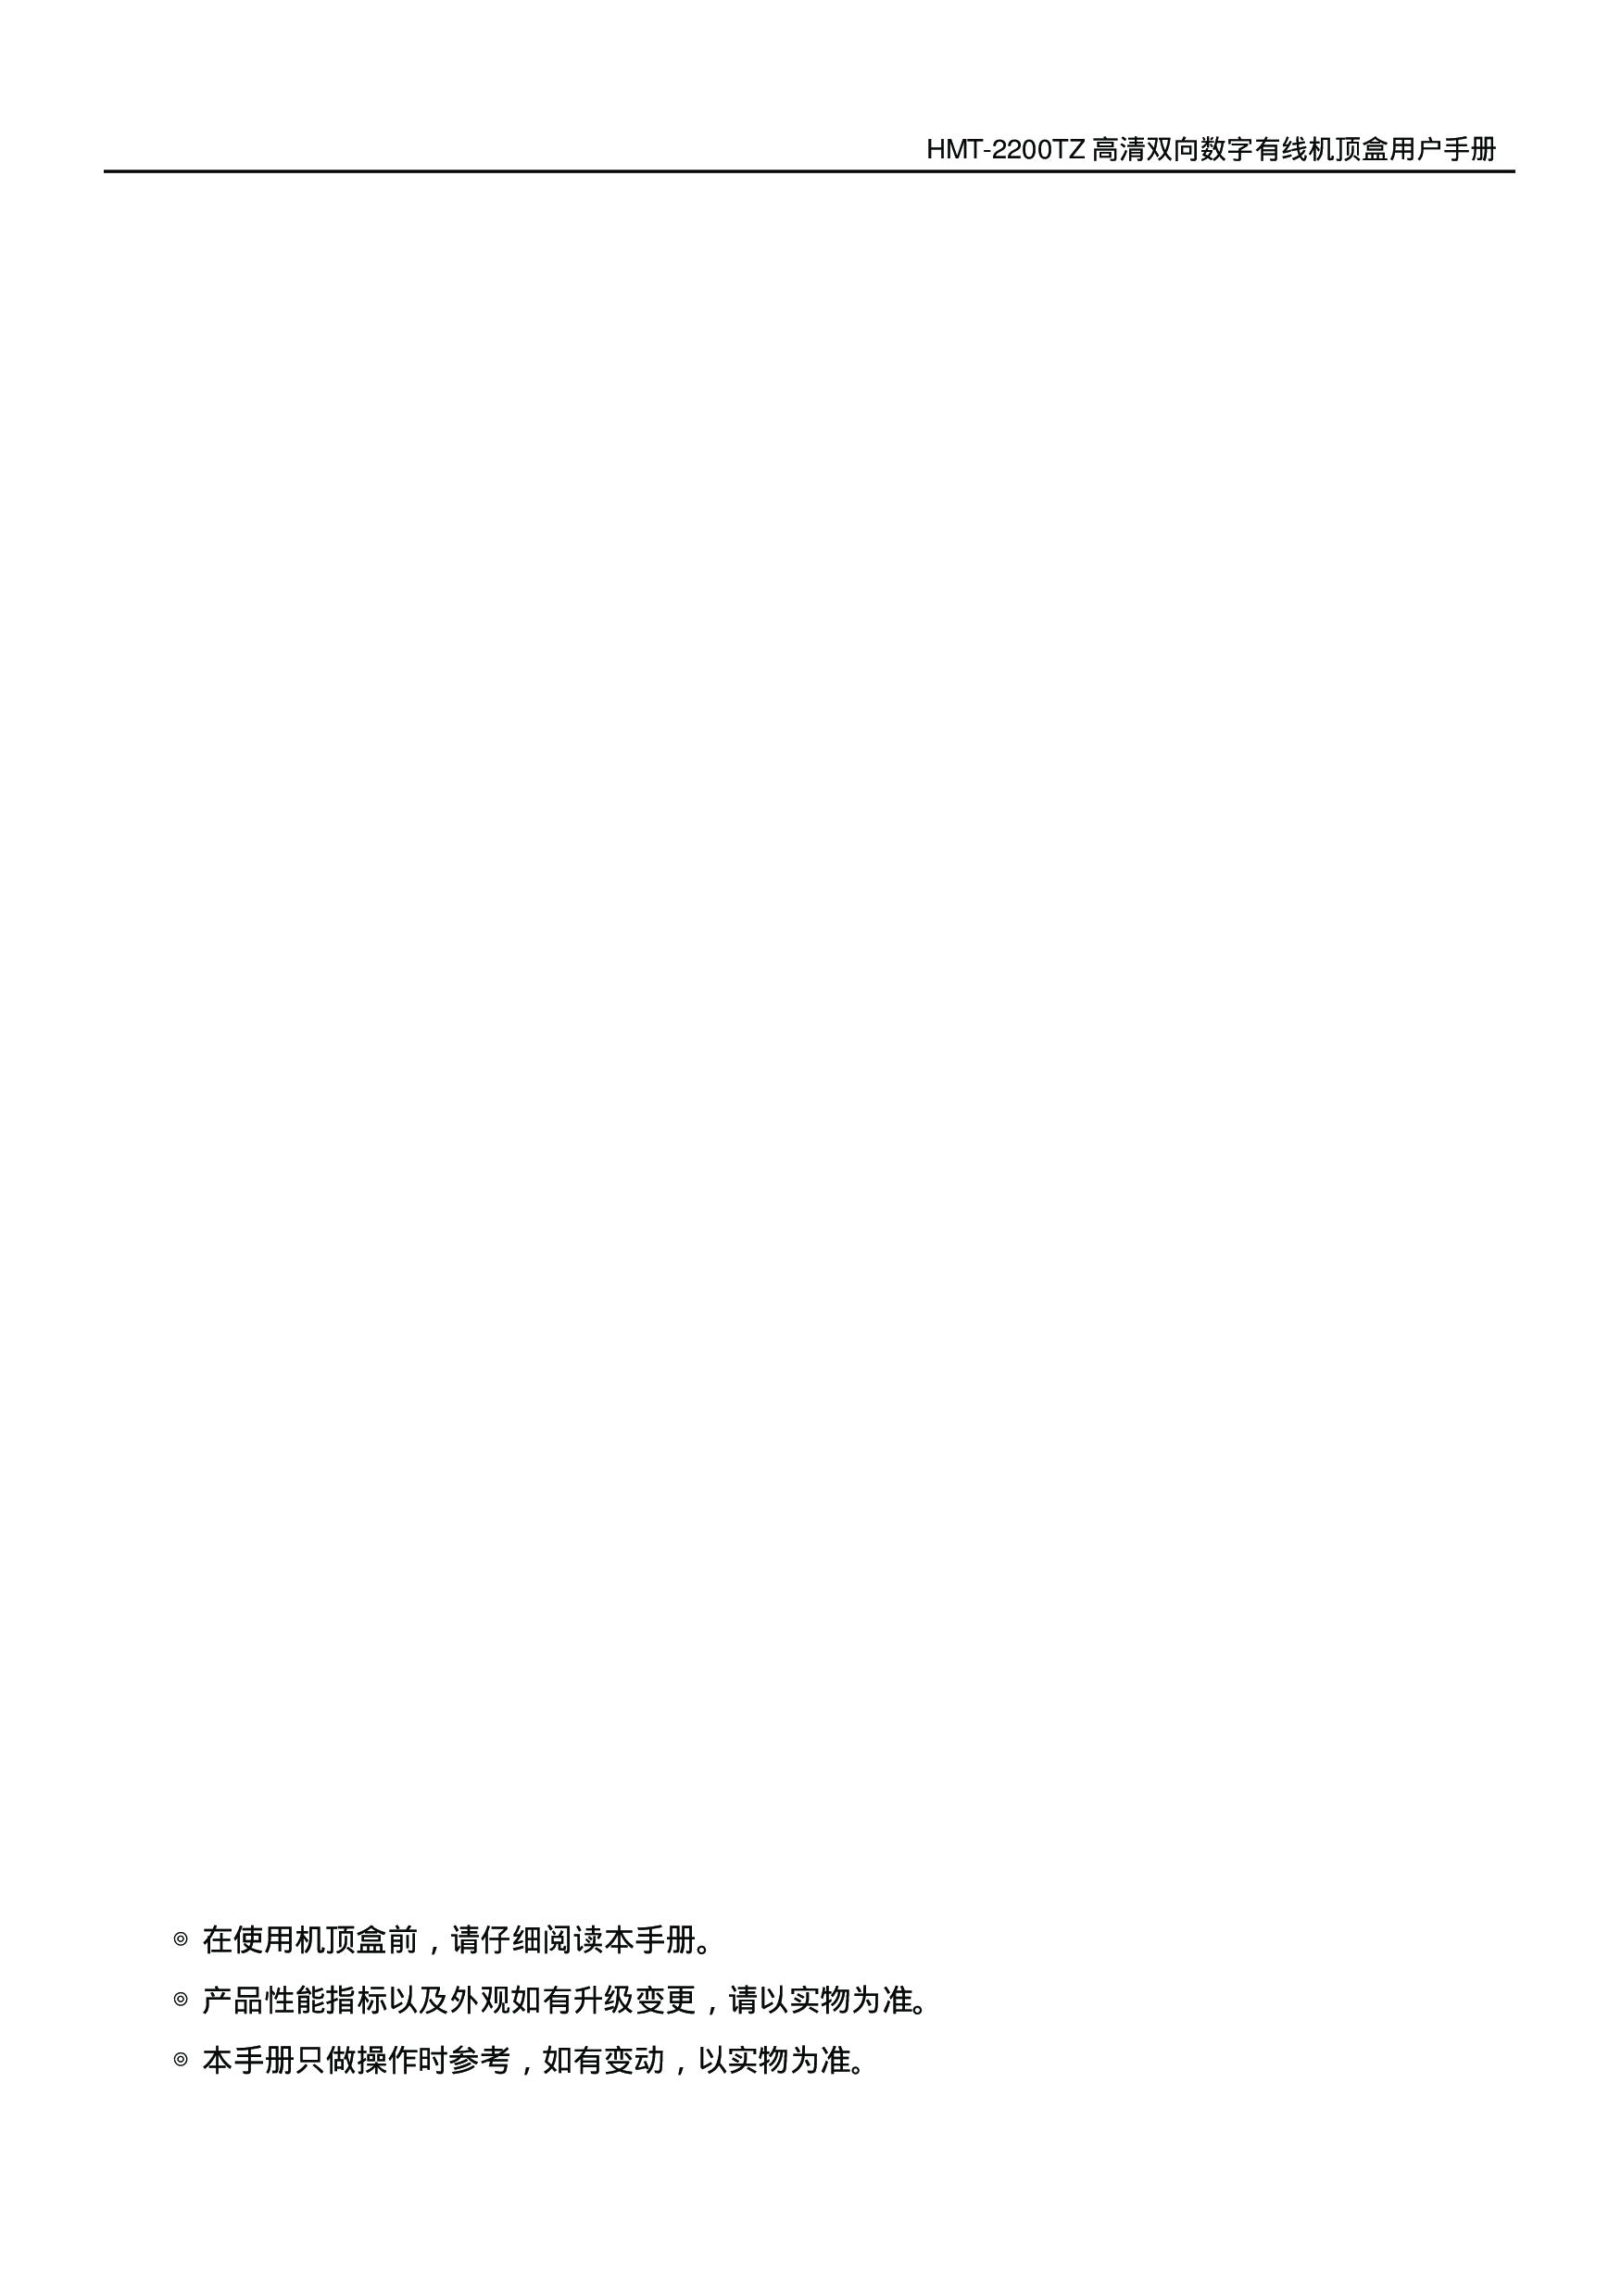 歌华 Gehua HMT-2200TZ 用户手册 第1页